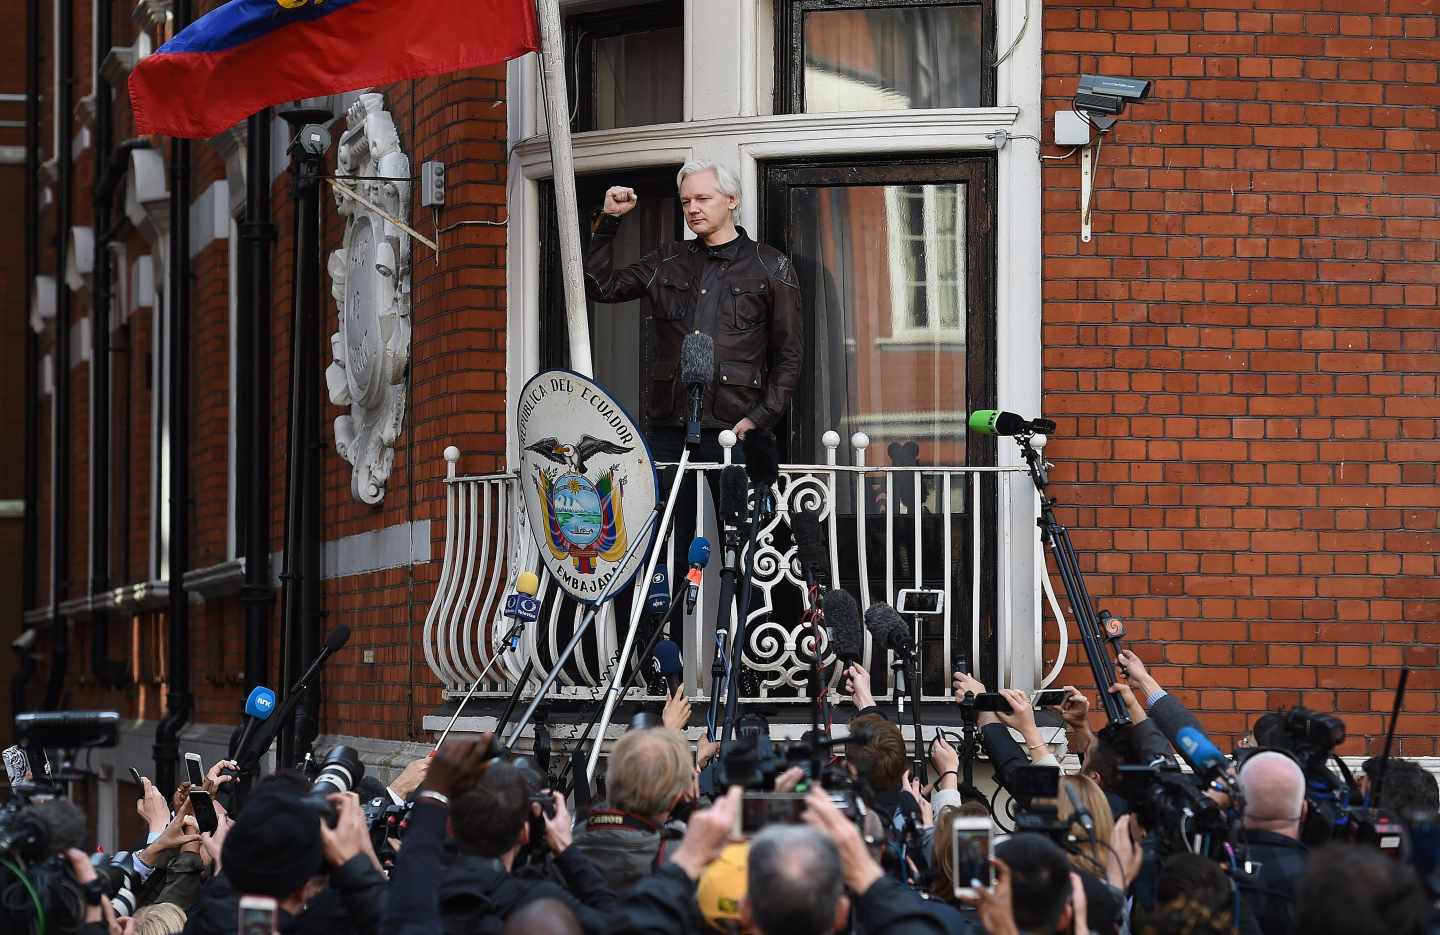 Julian Assange saluda a sus seguidores desde la embajada ecuatoriana en Londres.